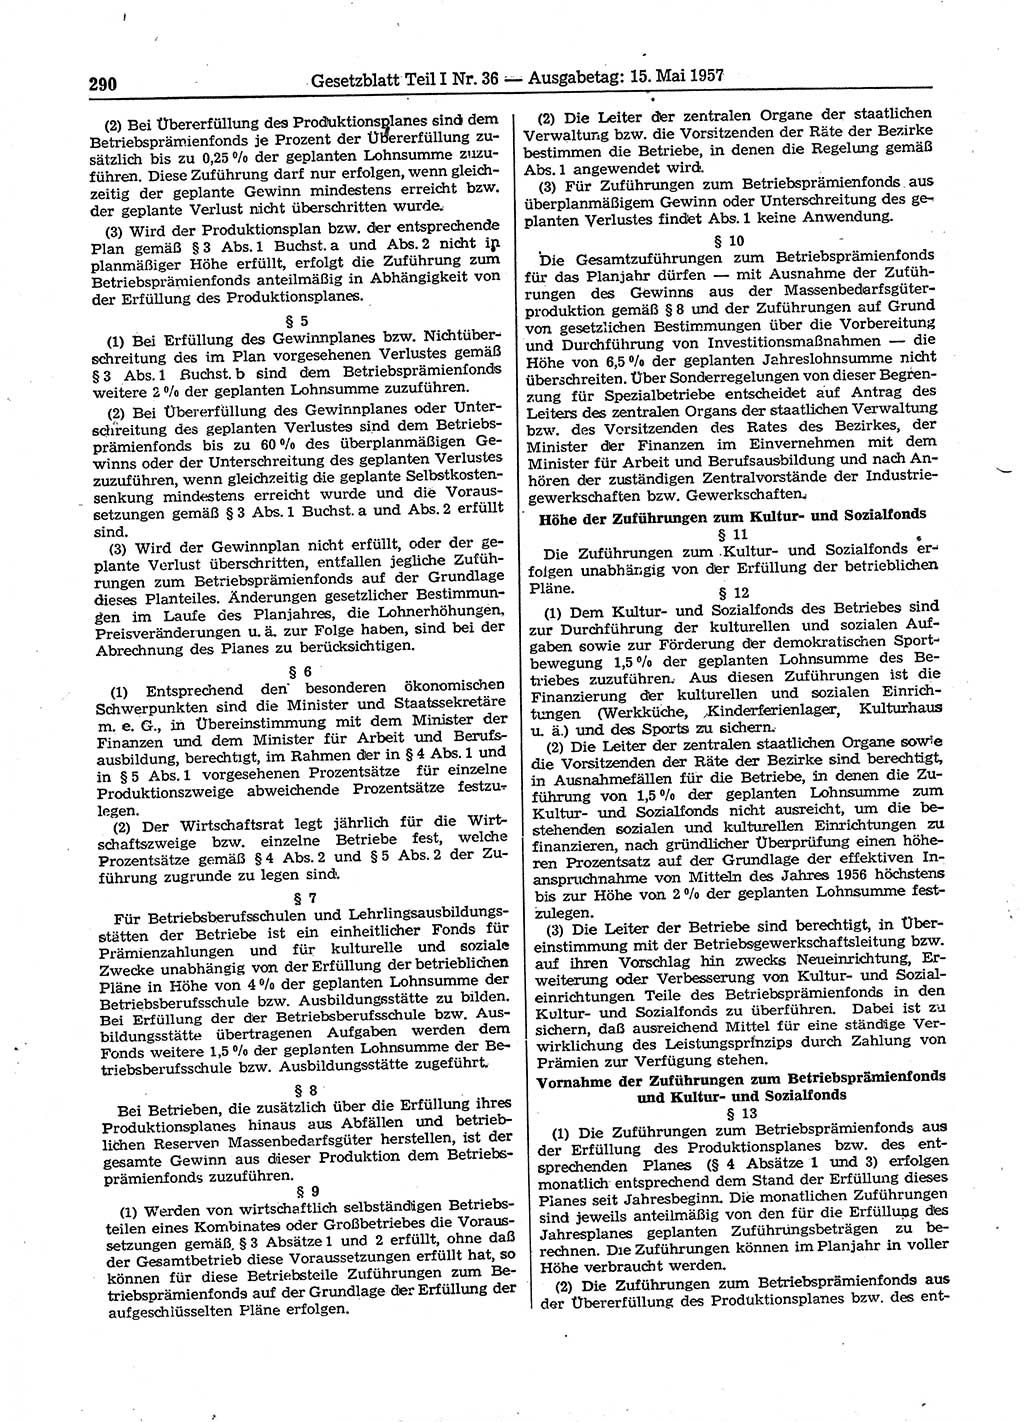 Gesetzblatt (GBl.) der Deutschen Demokratischen Republik (DDR) Teil Ⅰ 1957, Seite 290 (GBl. DDR Ⅰ 1957, S. 290)